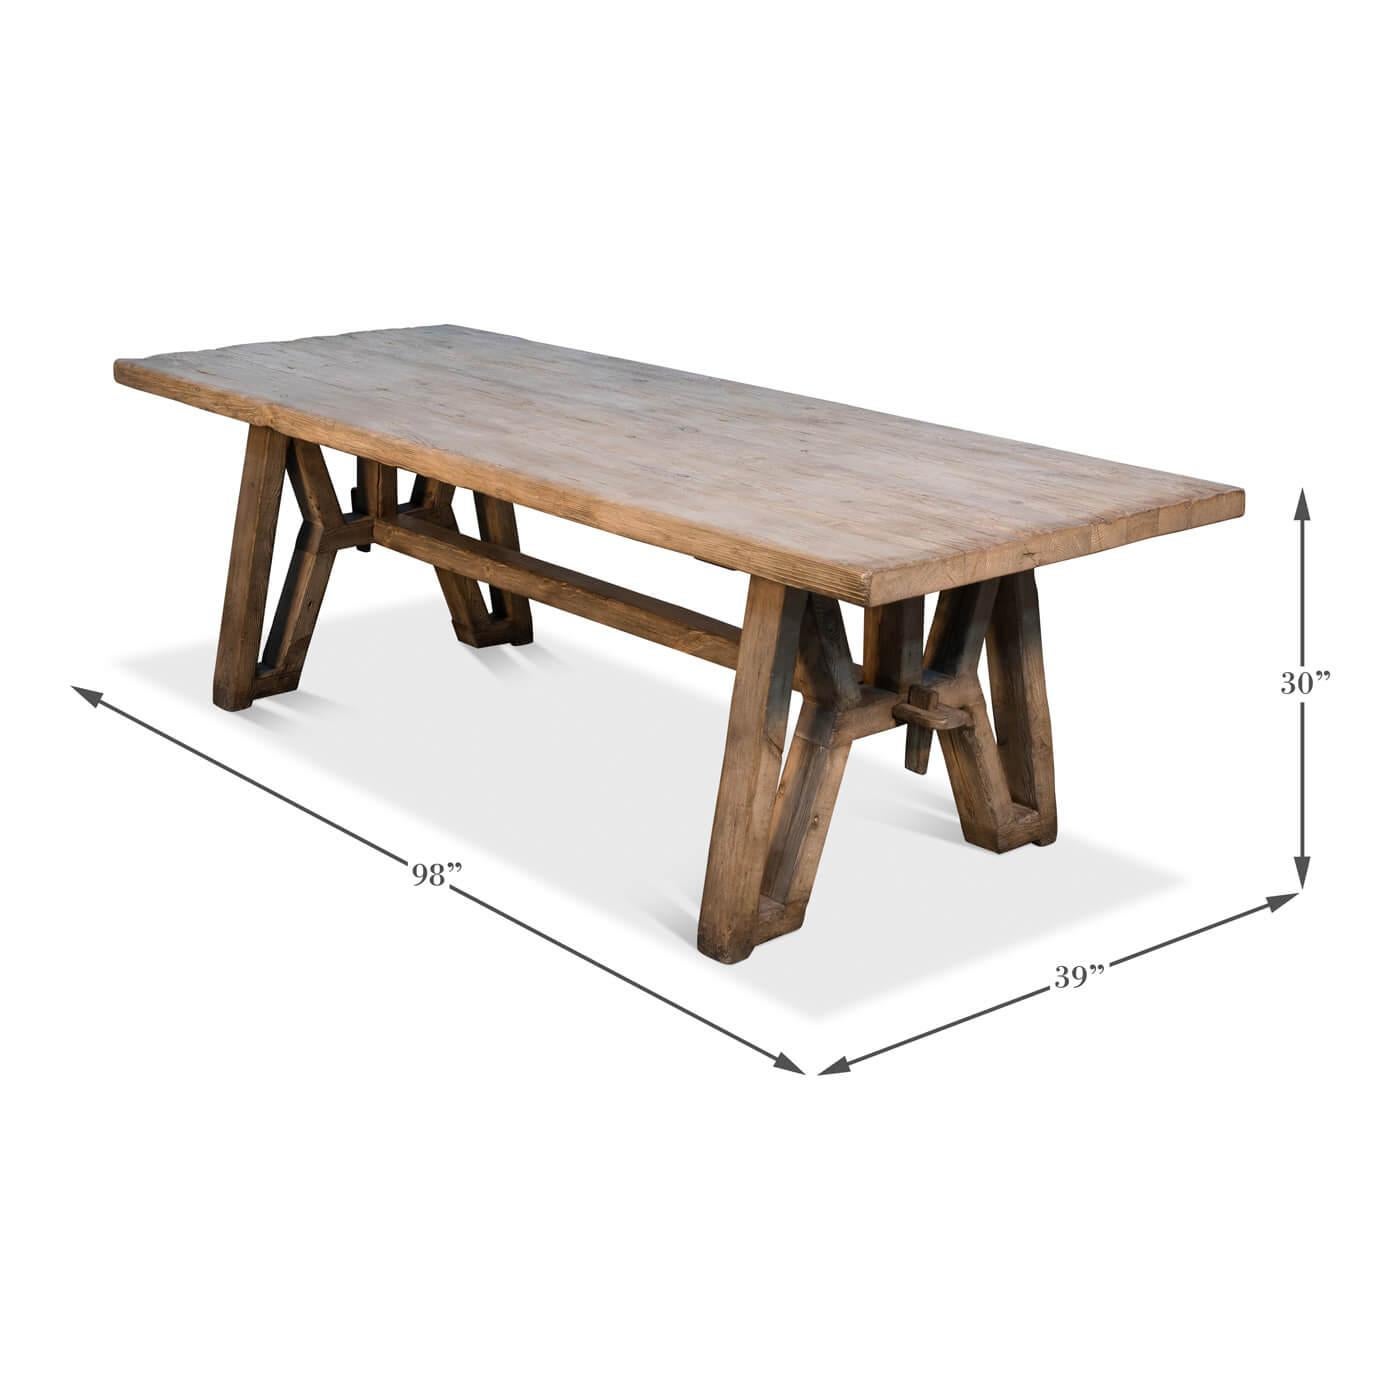 Asian Industrial Reclaimed Wood Farm Table